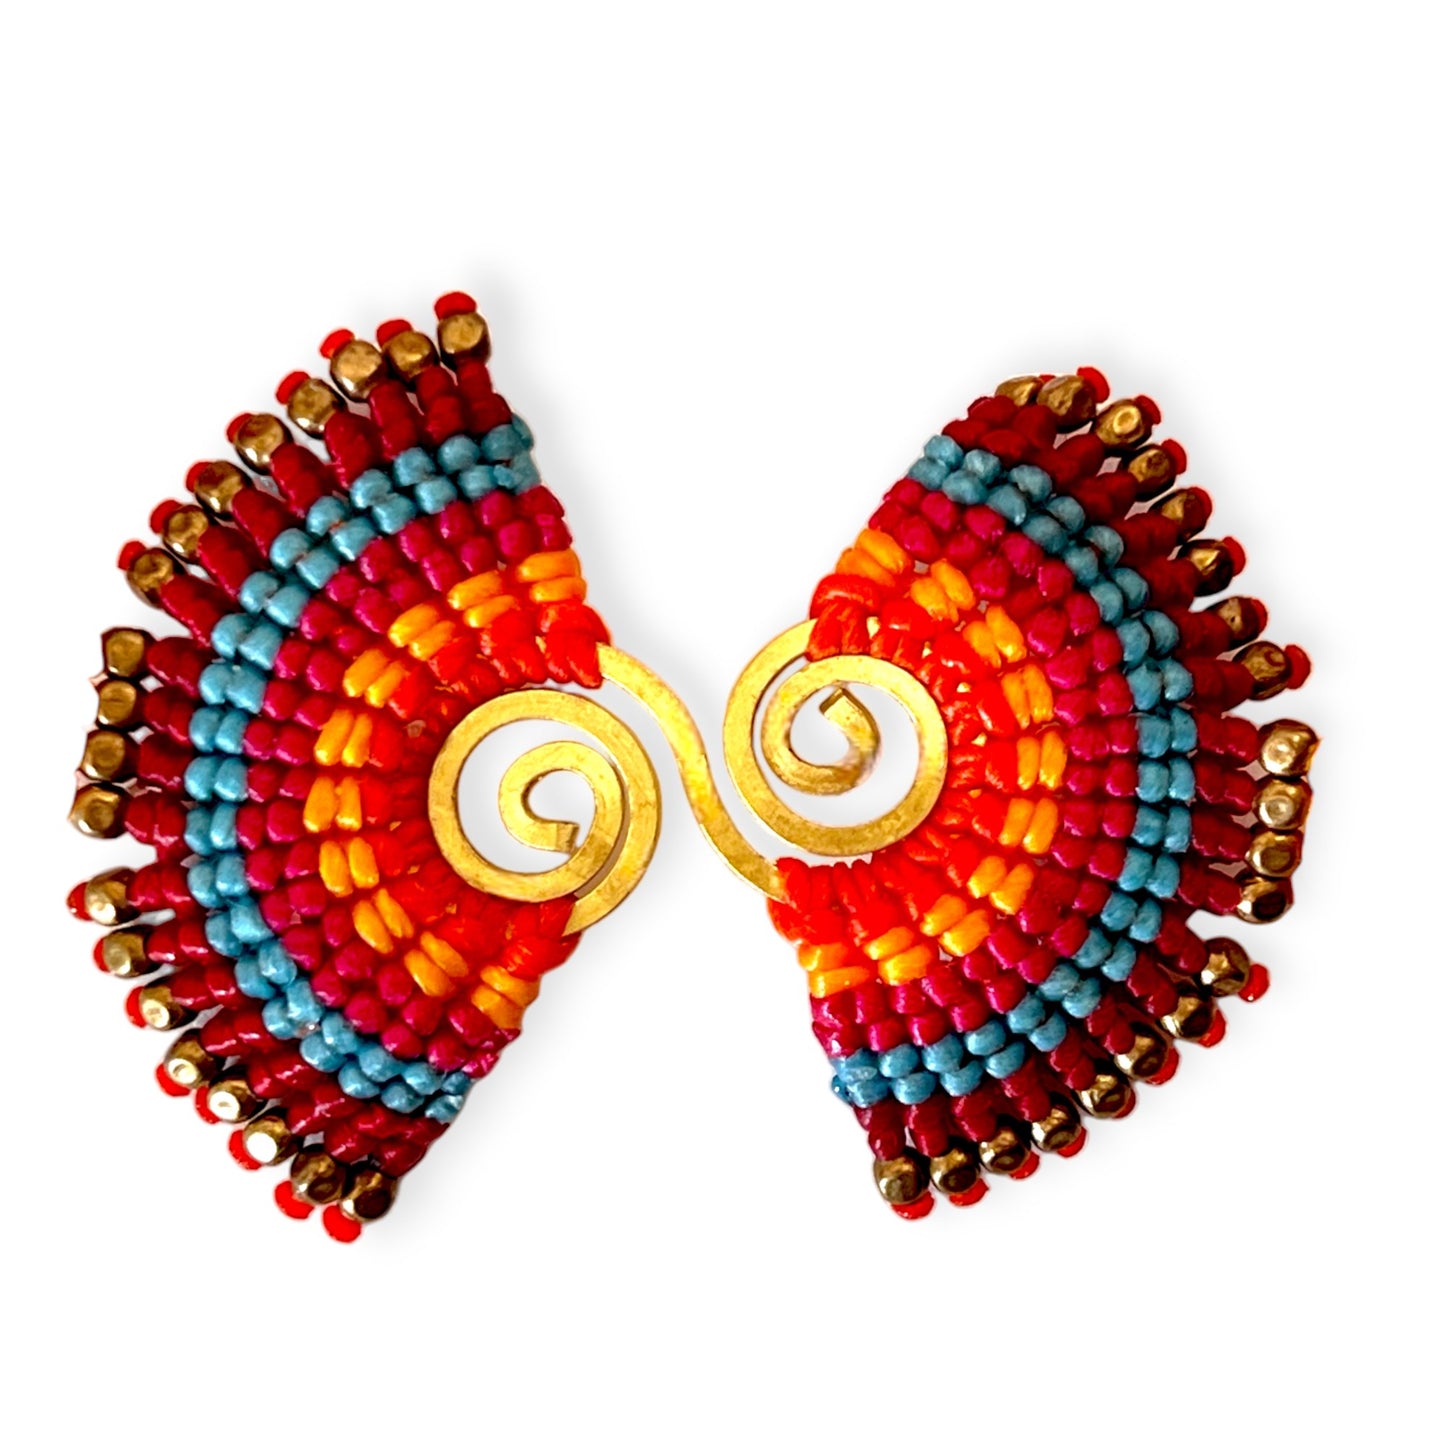 Colorful double swirl tribal pattern bracelet - Sundara Joon